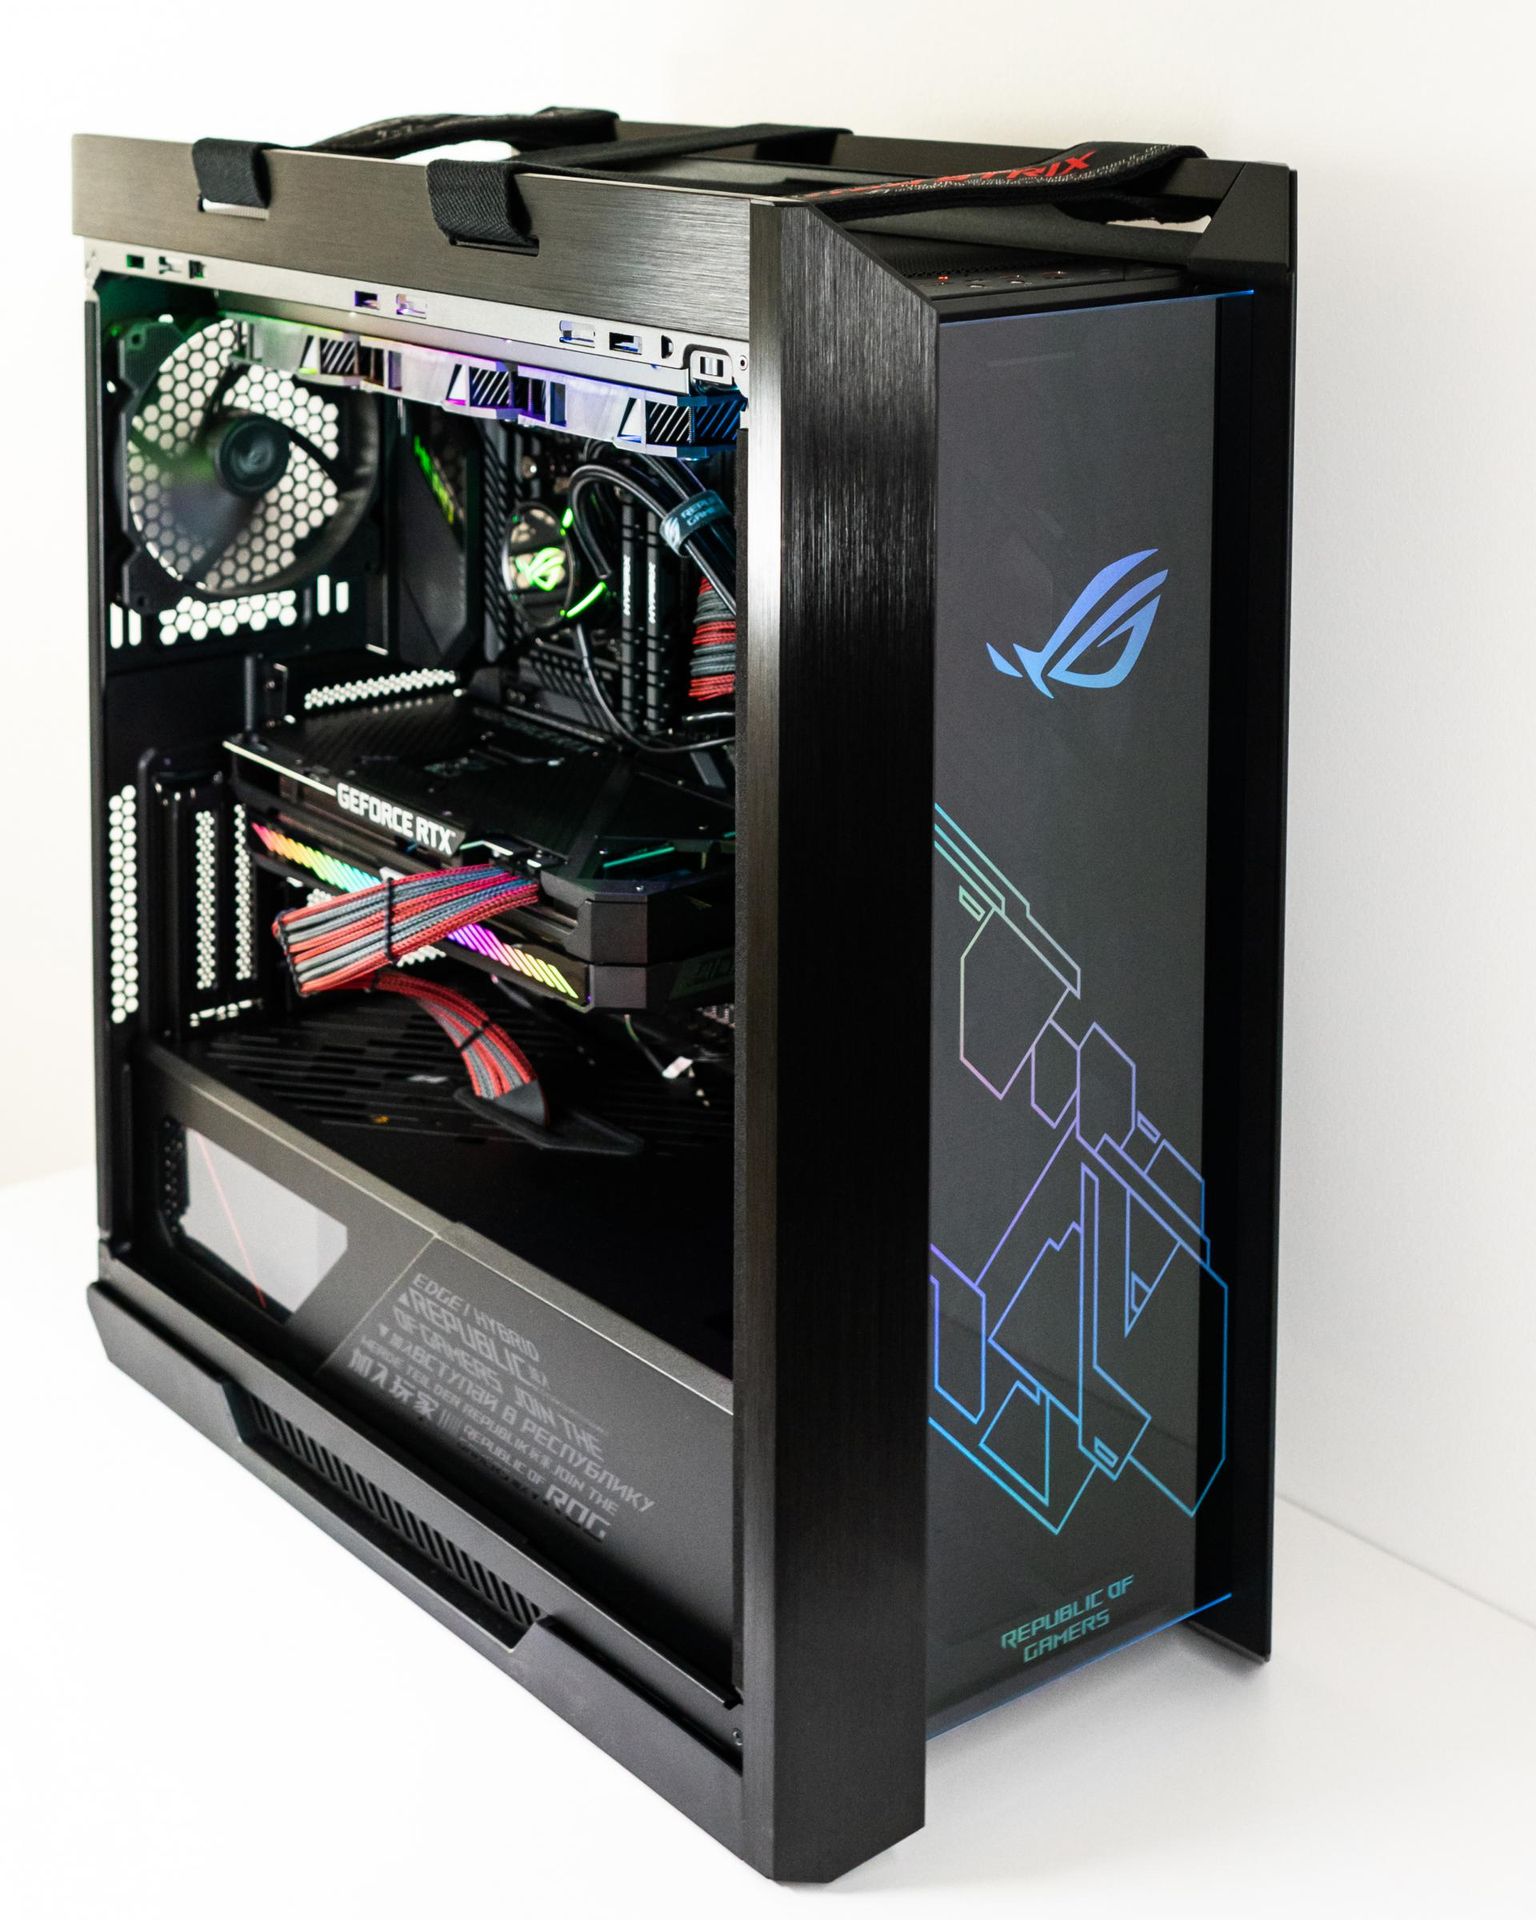 Arvutitark sai valmis uue mänguriarvutite seeria «it AMD R9 Gamer Aerox», millele lisandub uhke tiitel Powered by Asus.